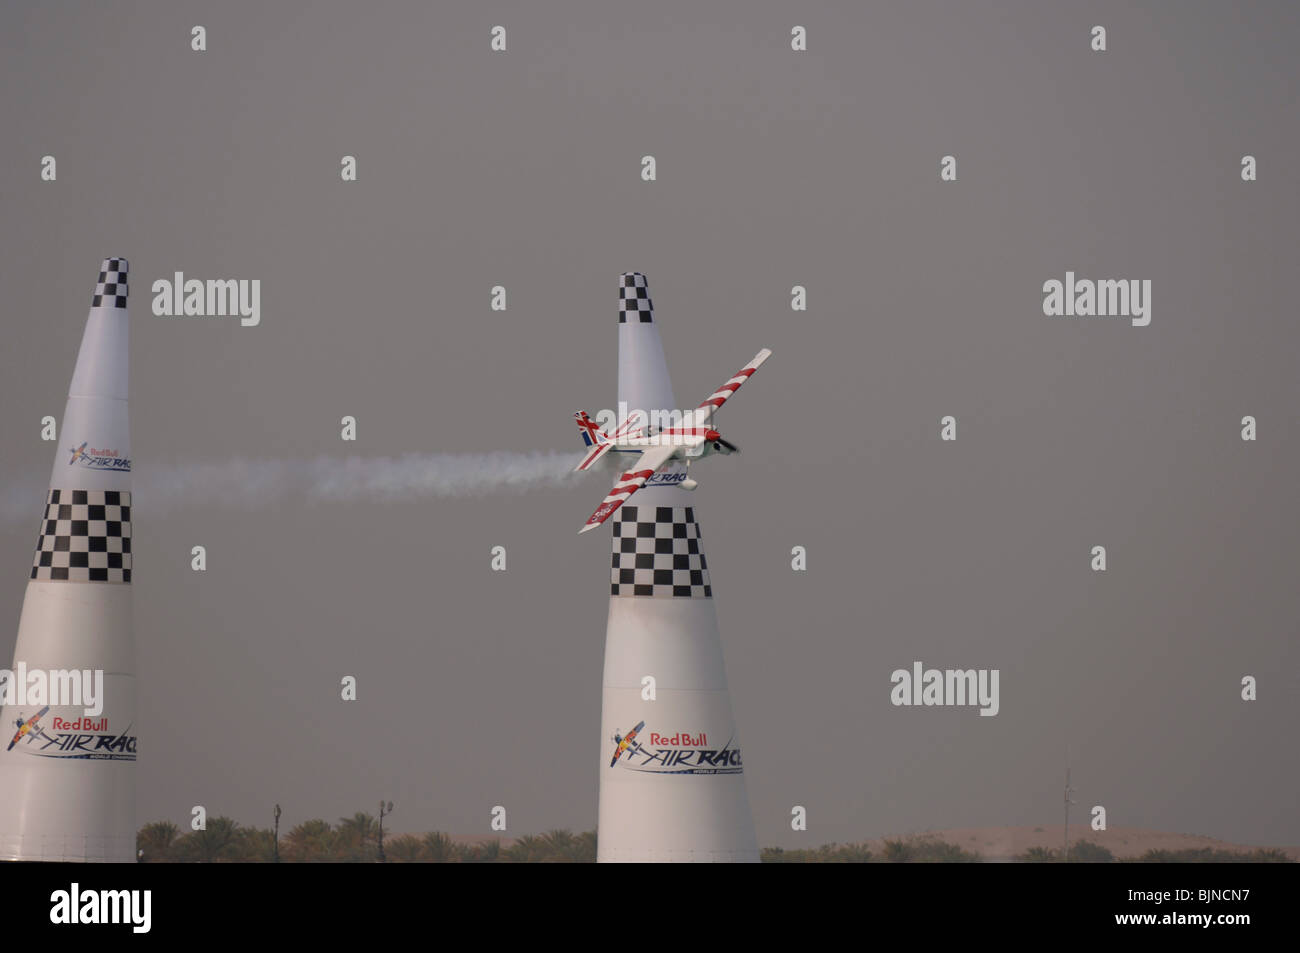 27.03.2010. Abu Dabi. Red Bull Air Race. Flugzeug fliegt zwischen Marker leuchten während des Rennens. Stockfoto